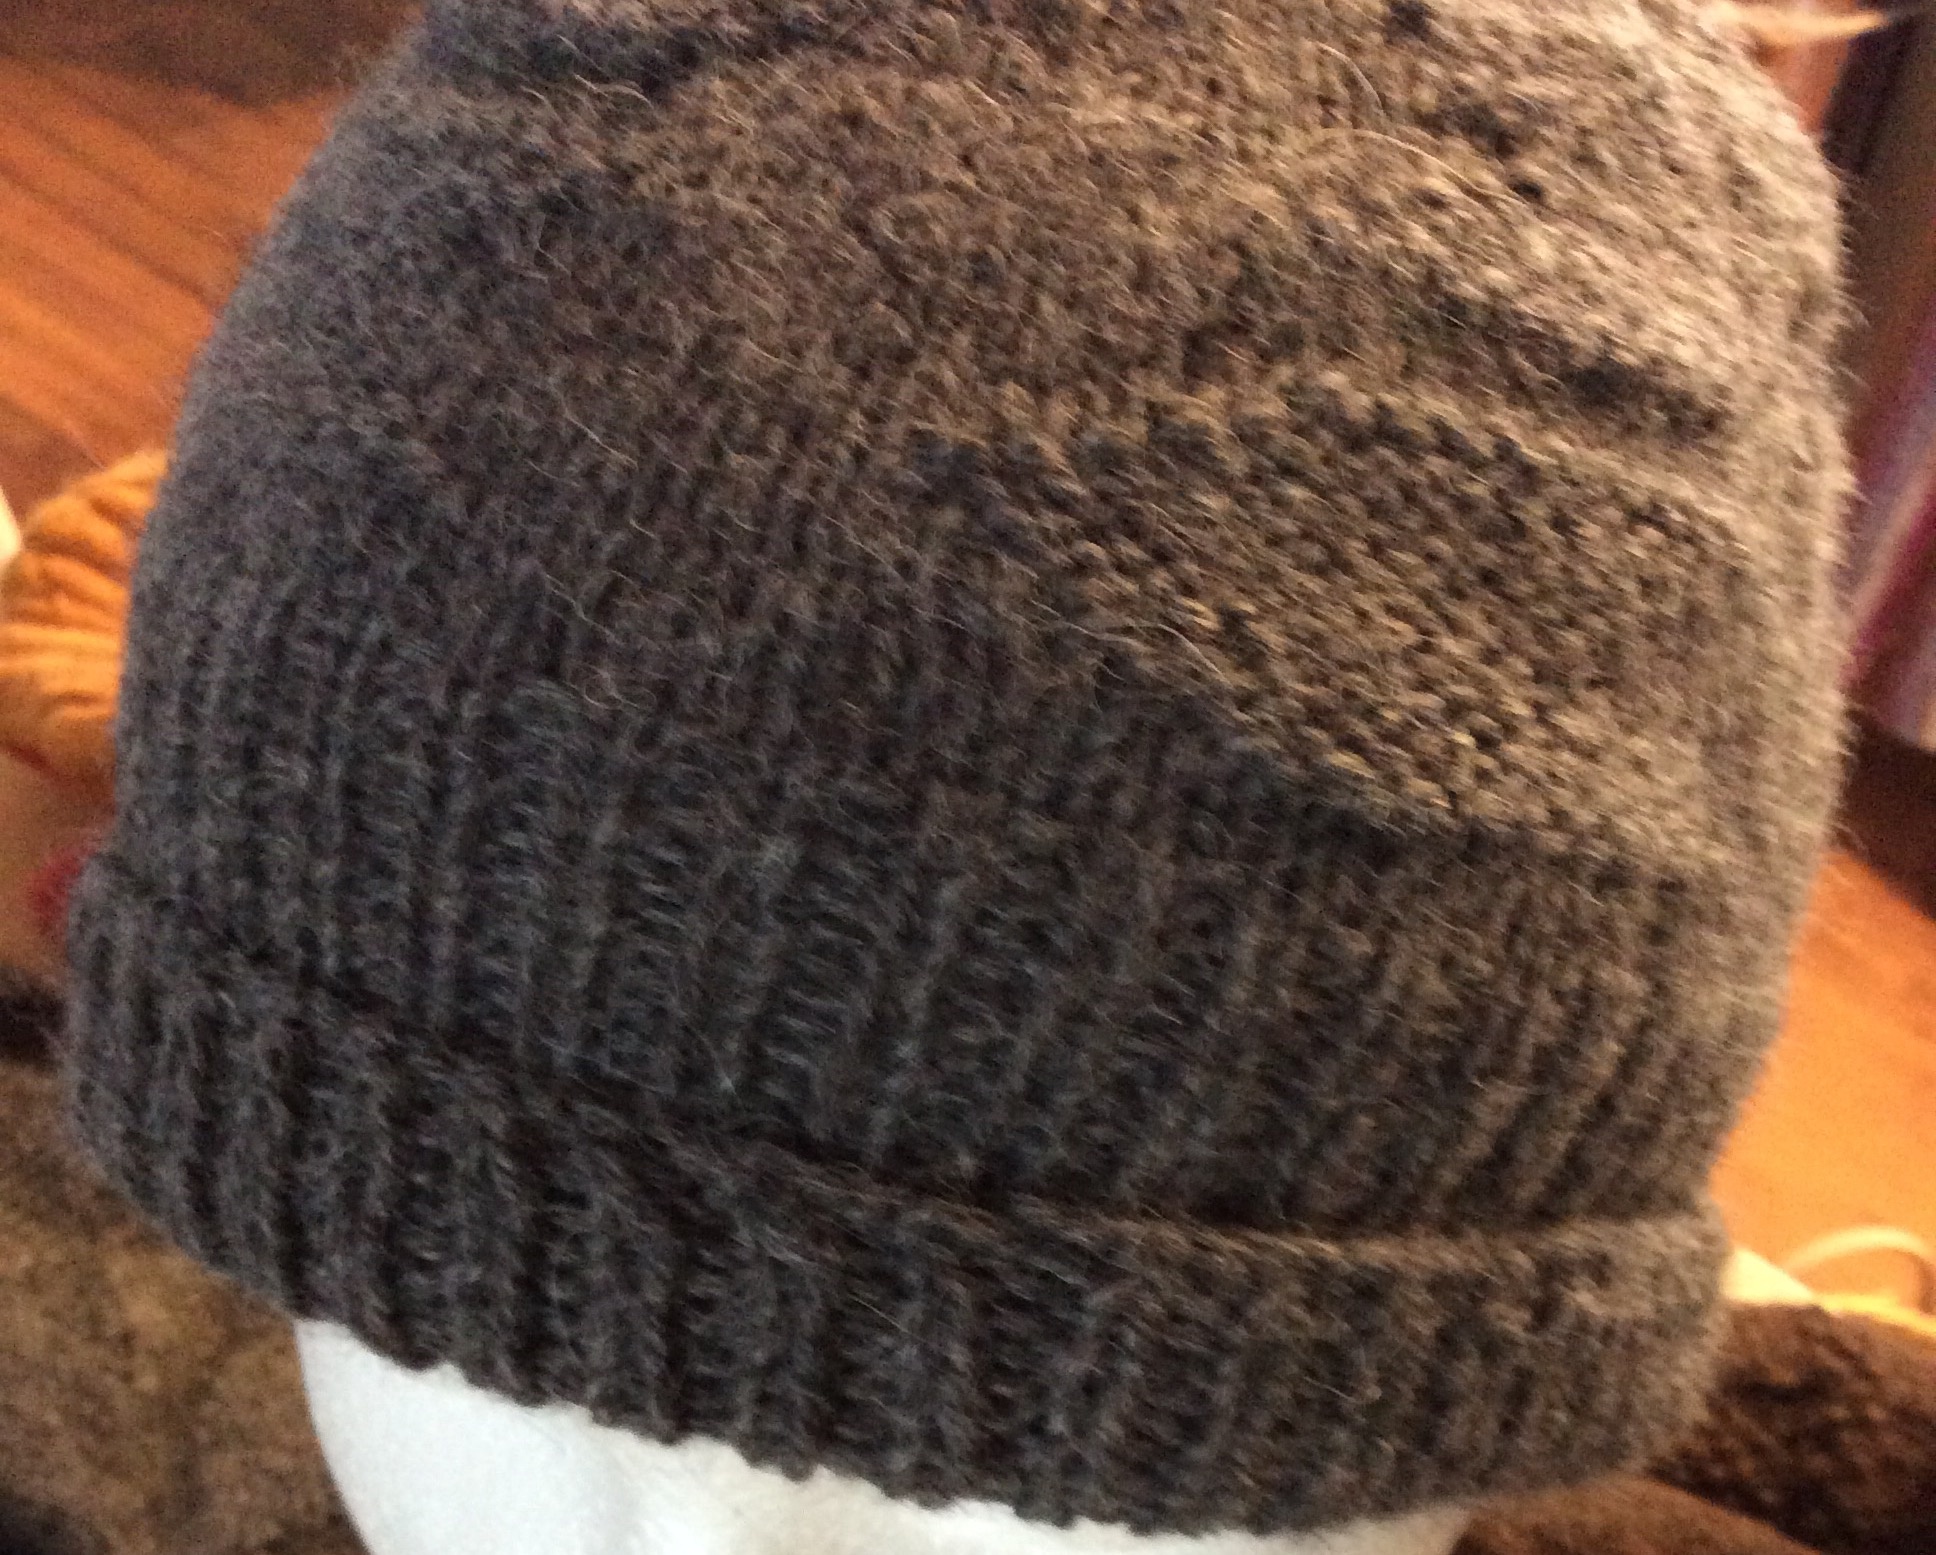 Messner Handknit Alpaca hat